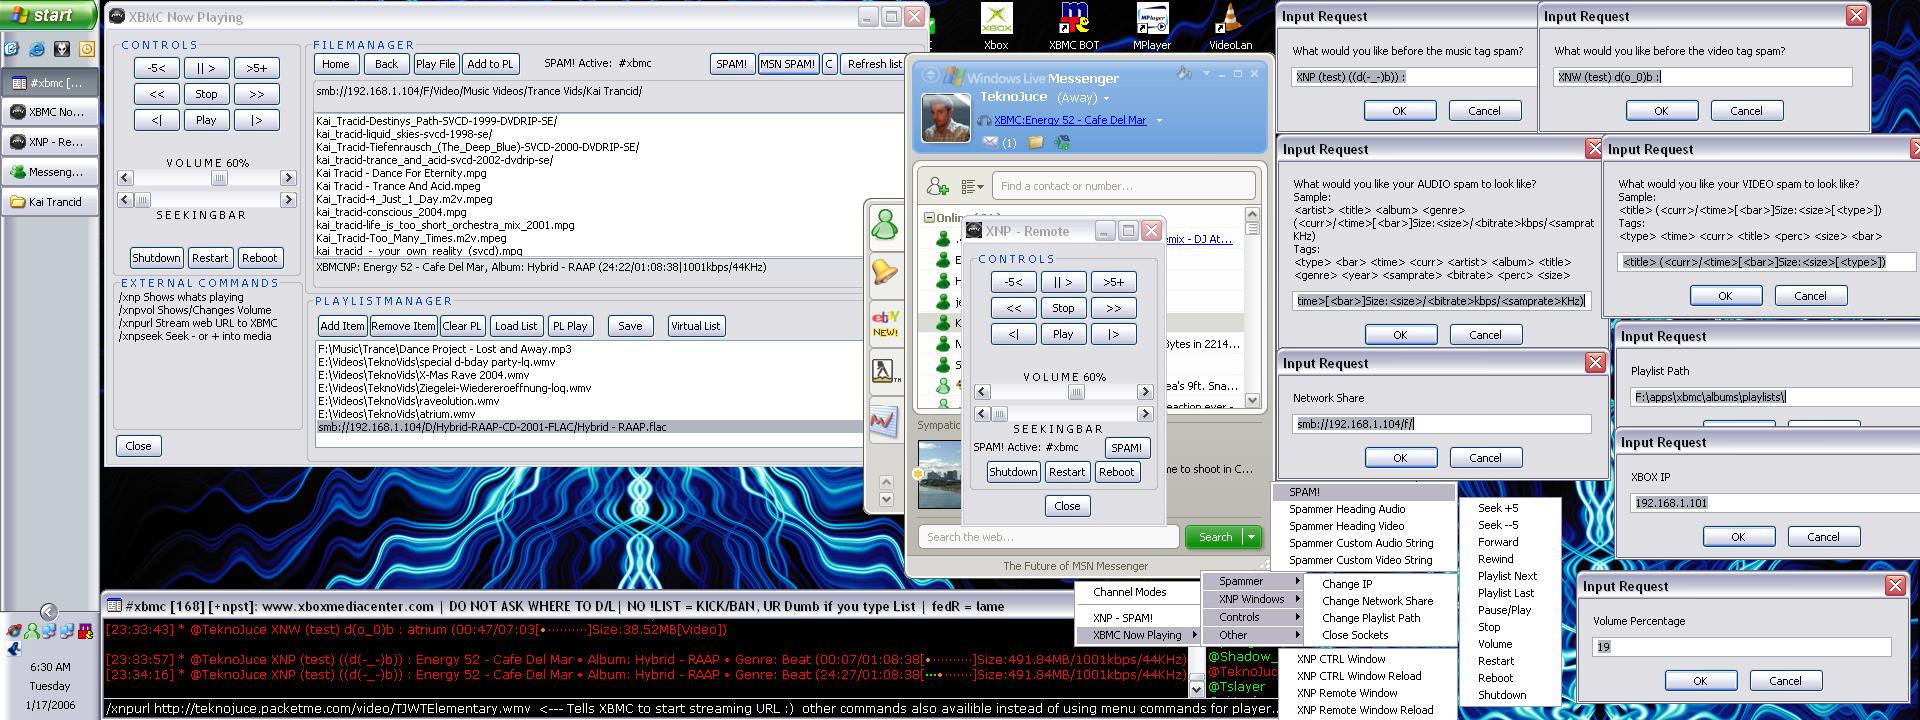 Xnpscreenshotsm(2006JAN17).jpg